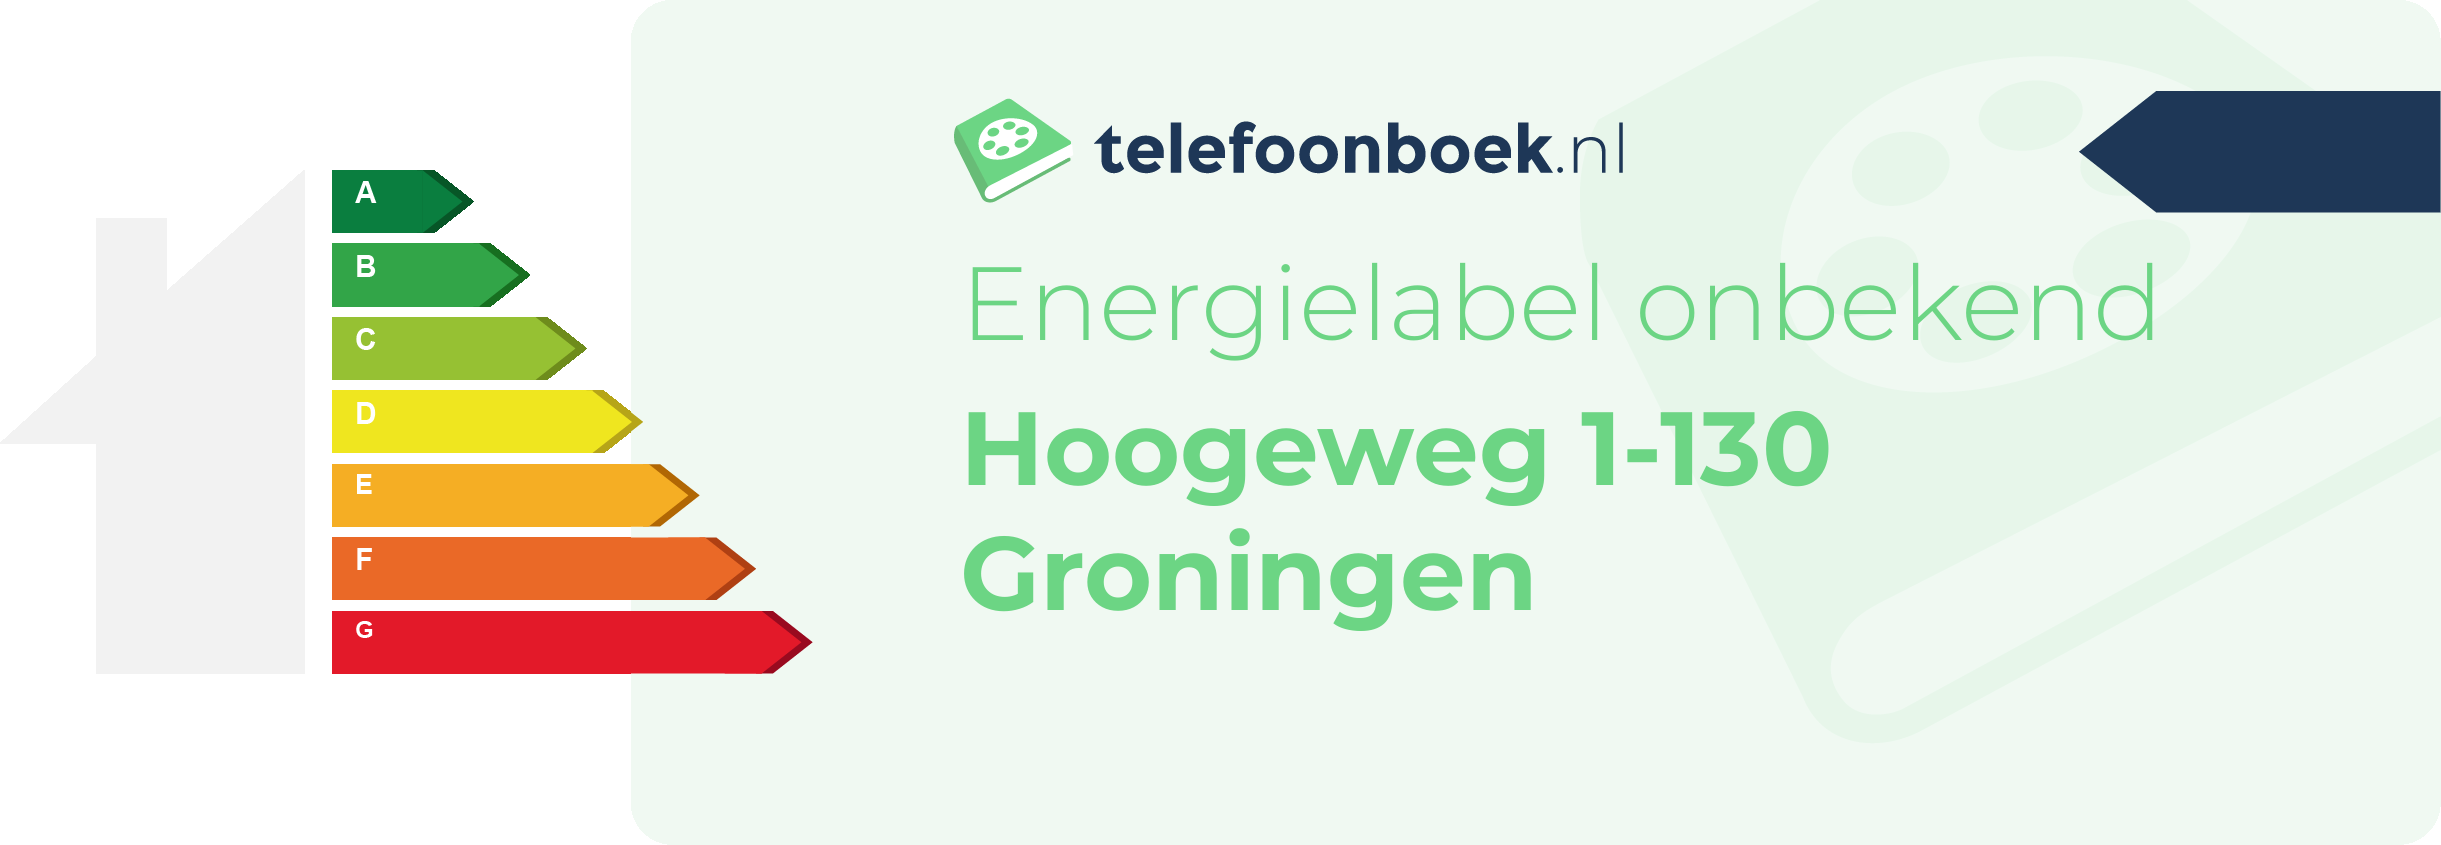 Energielabel Hoogeweg 1-130 Groningen